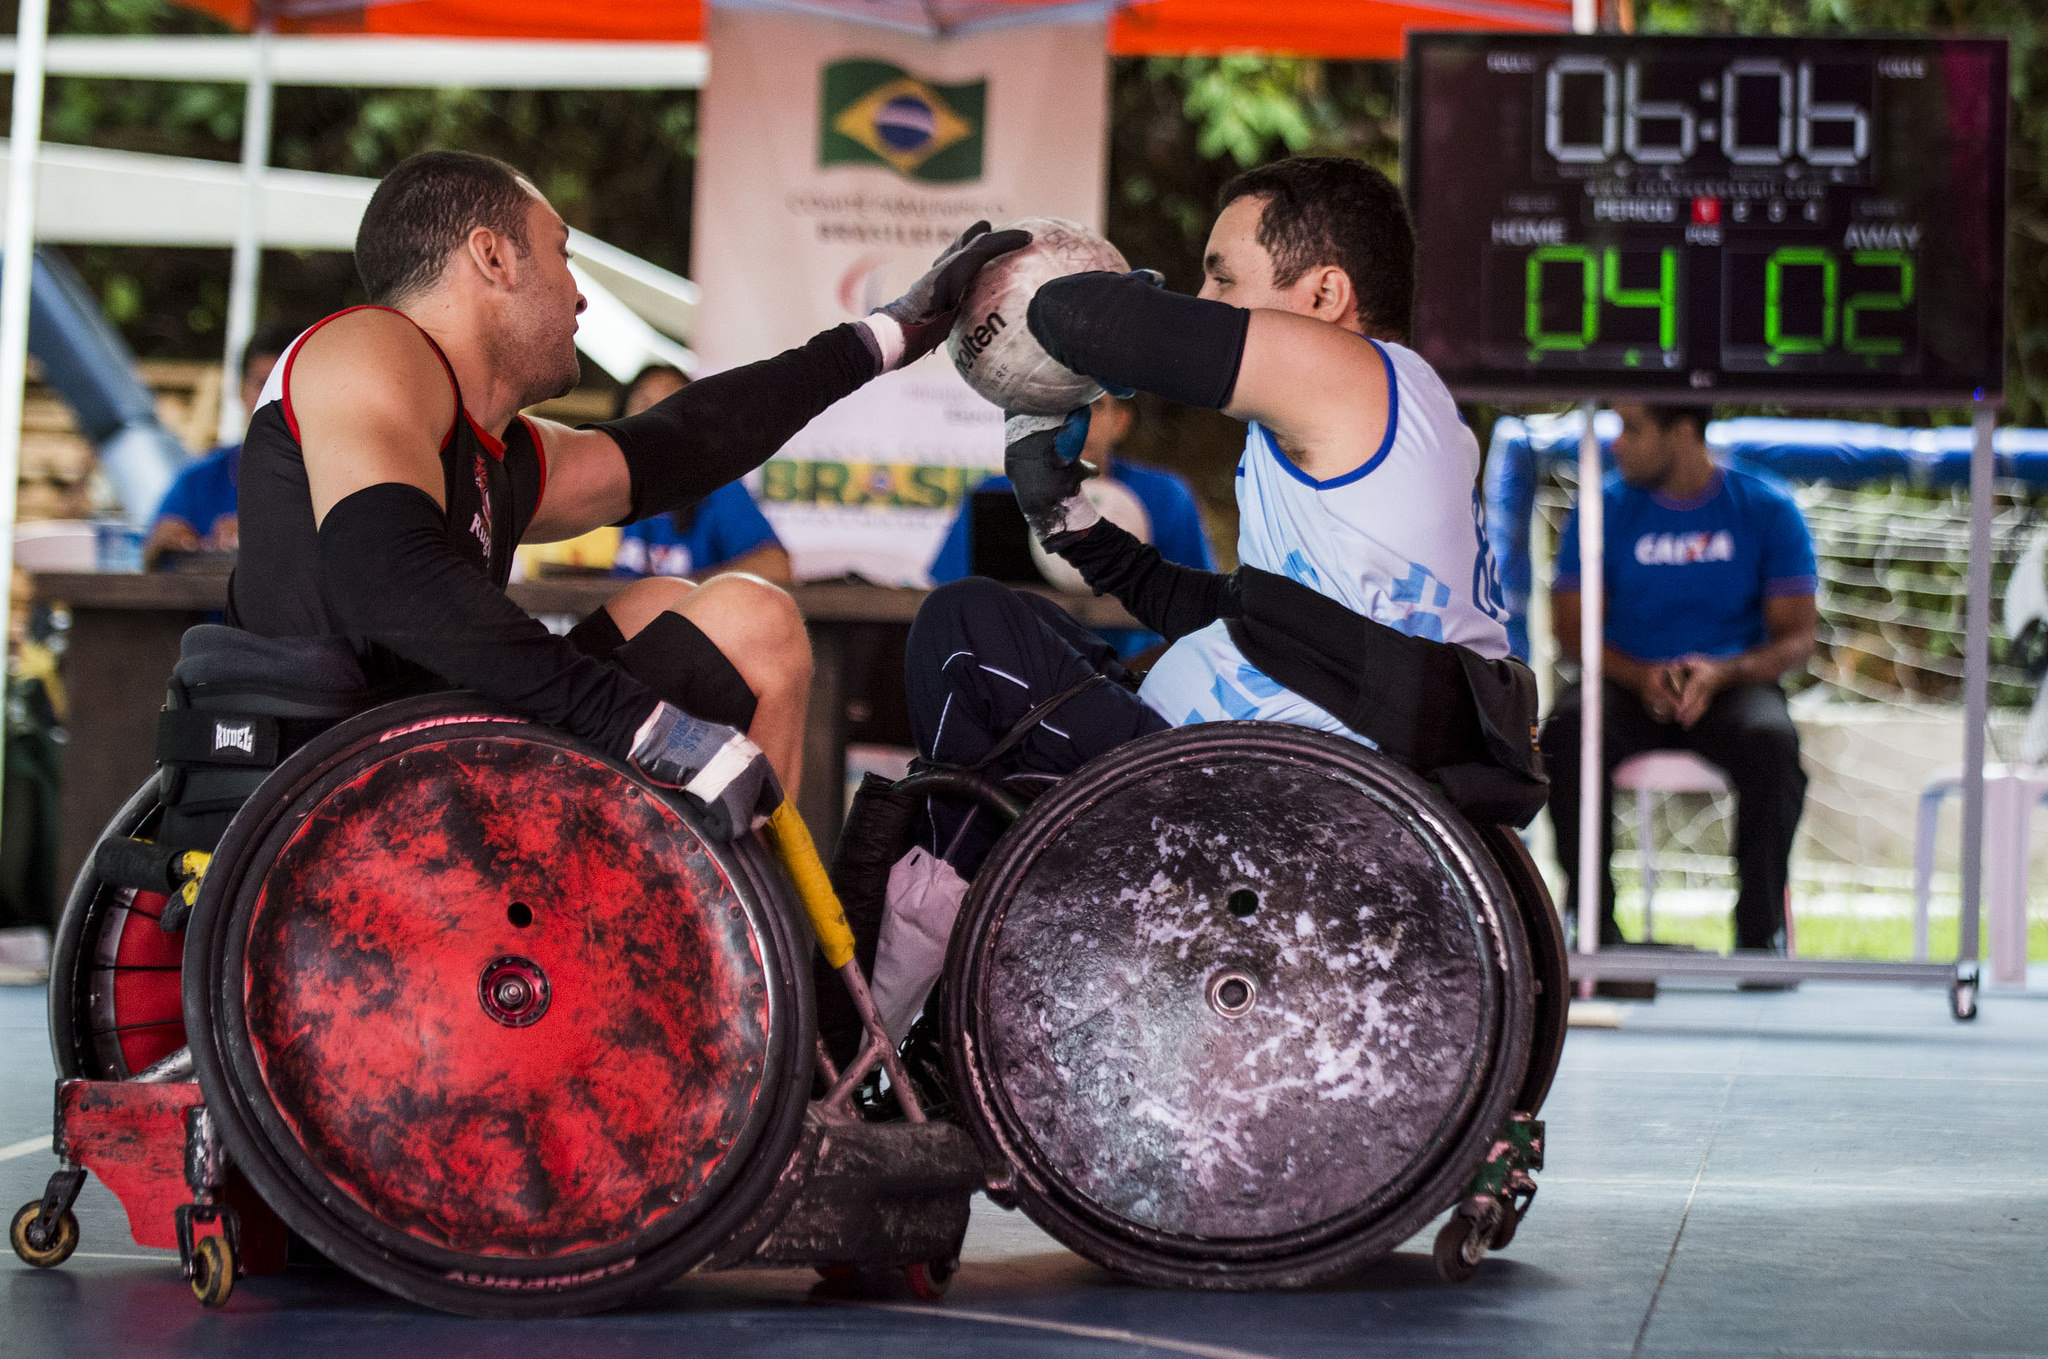 Brasil garante vaga inédita em Mundial de Rugby em cadeira de